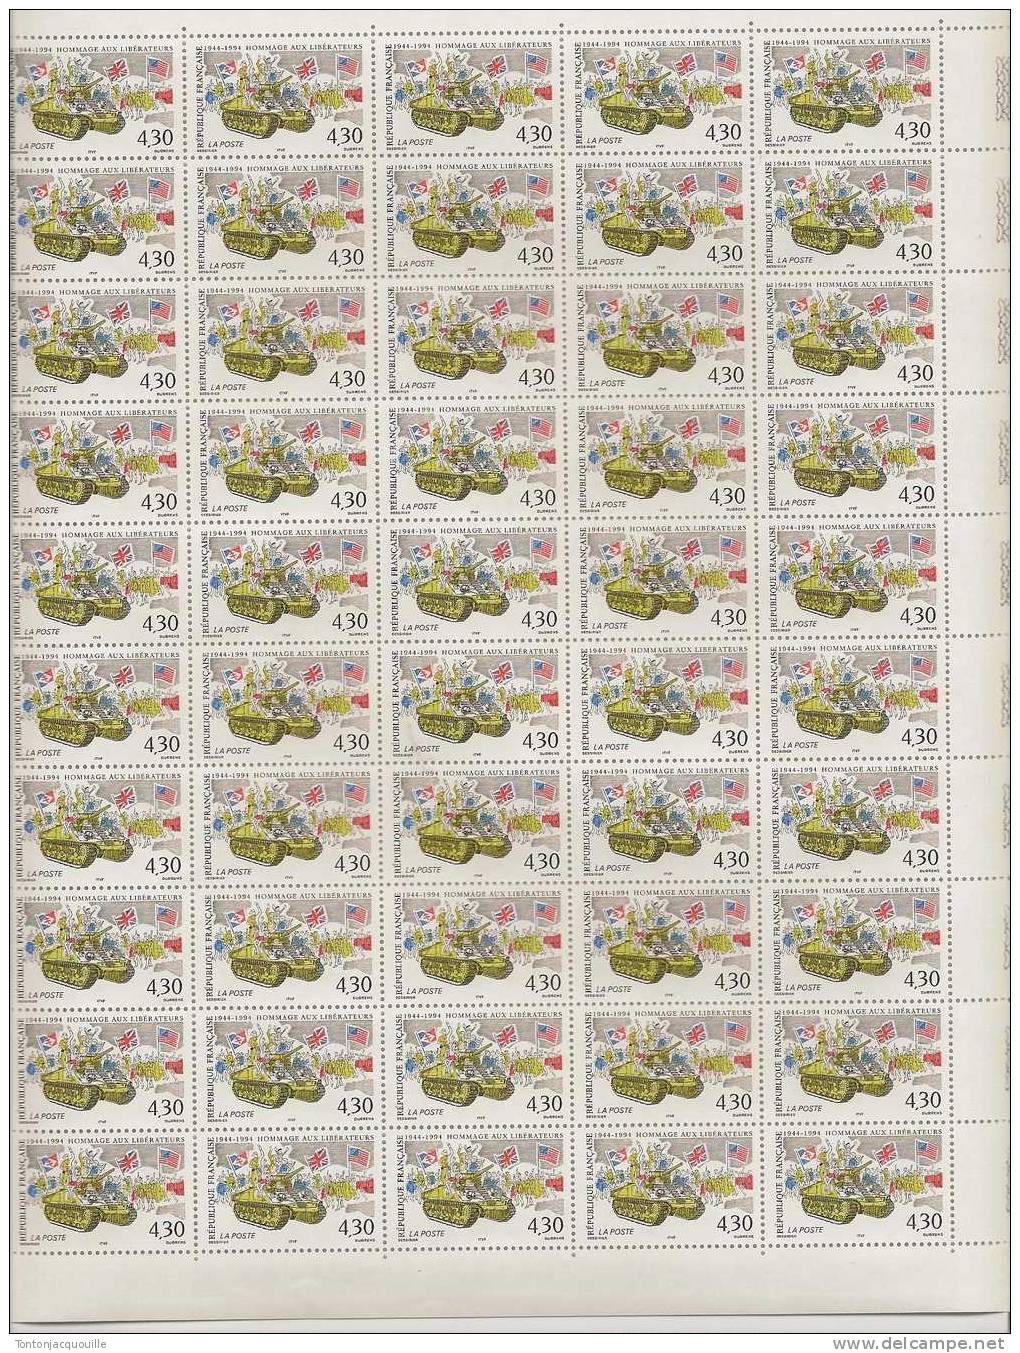 HOMMAGE AUX LIBERATEURS 1944-1994  ++ FEUILLE DE 50  TIMBRES A  4,30 FRANCS - Volledige Vellen